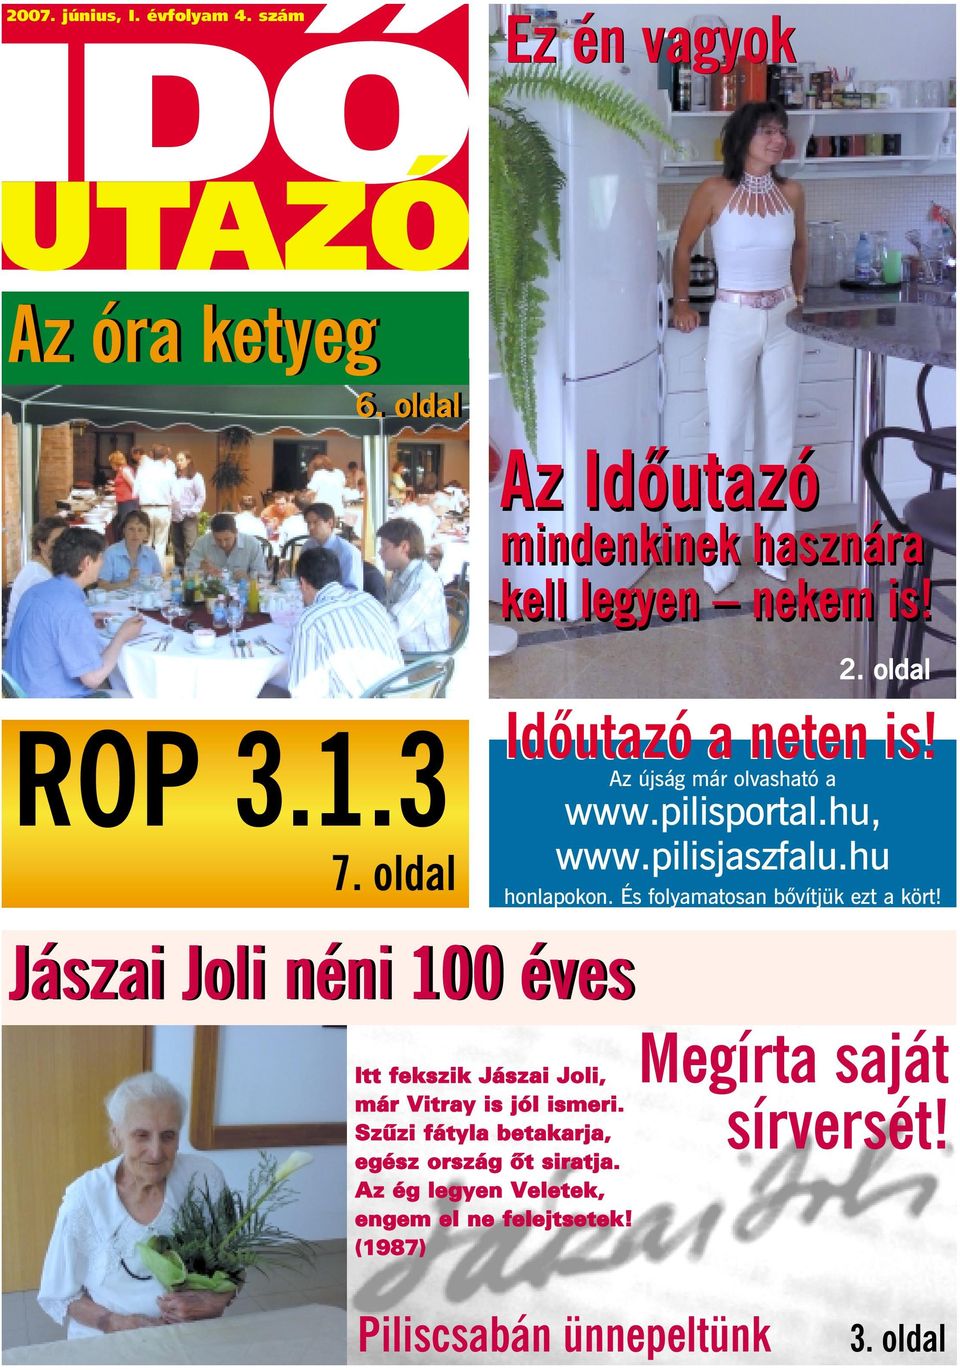 hu, www.pilisjaszfalu.hu honlapokon. És folyamatosan bôvítjük ezt a kört!